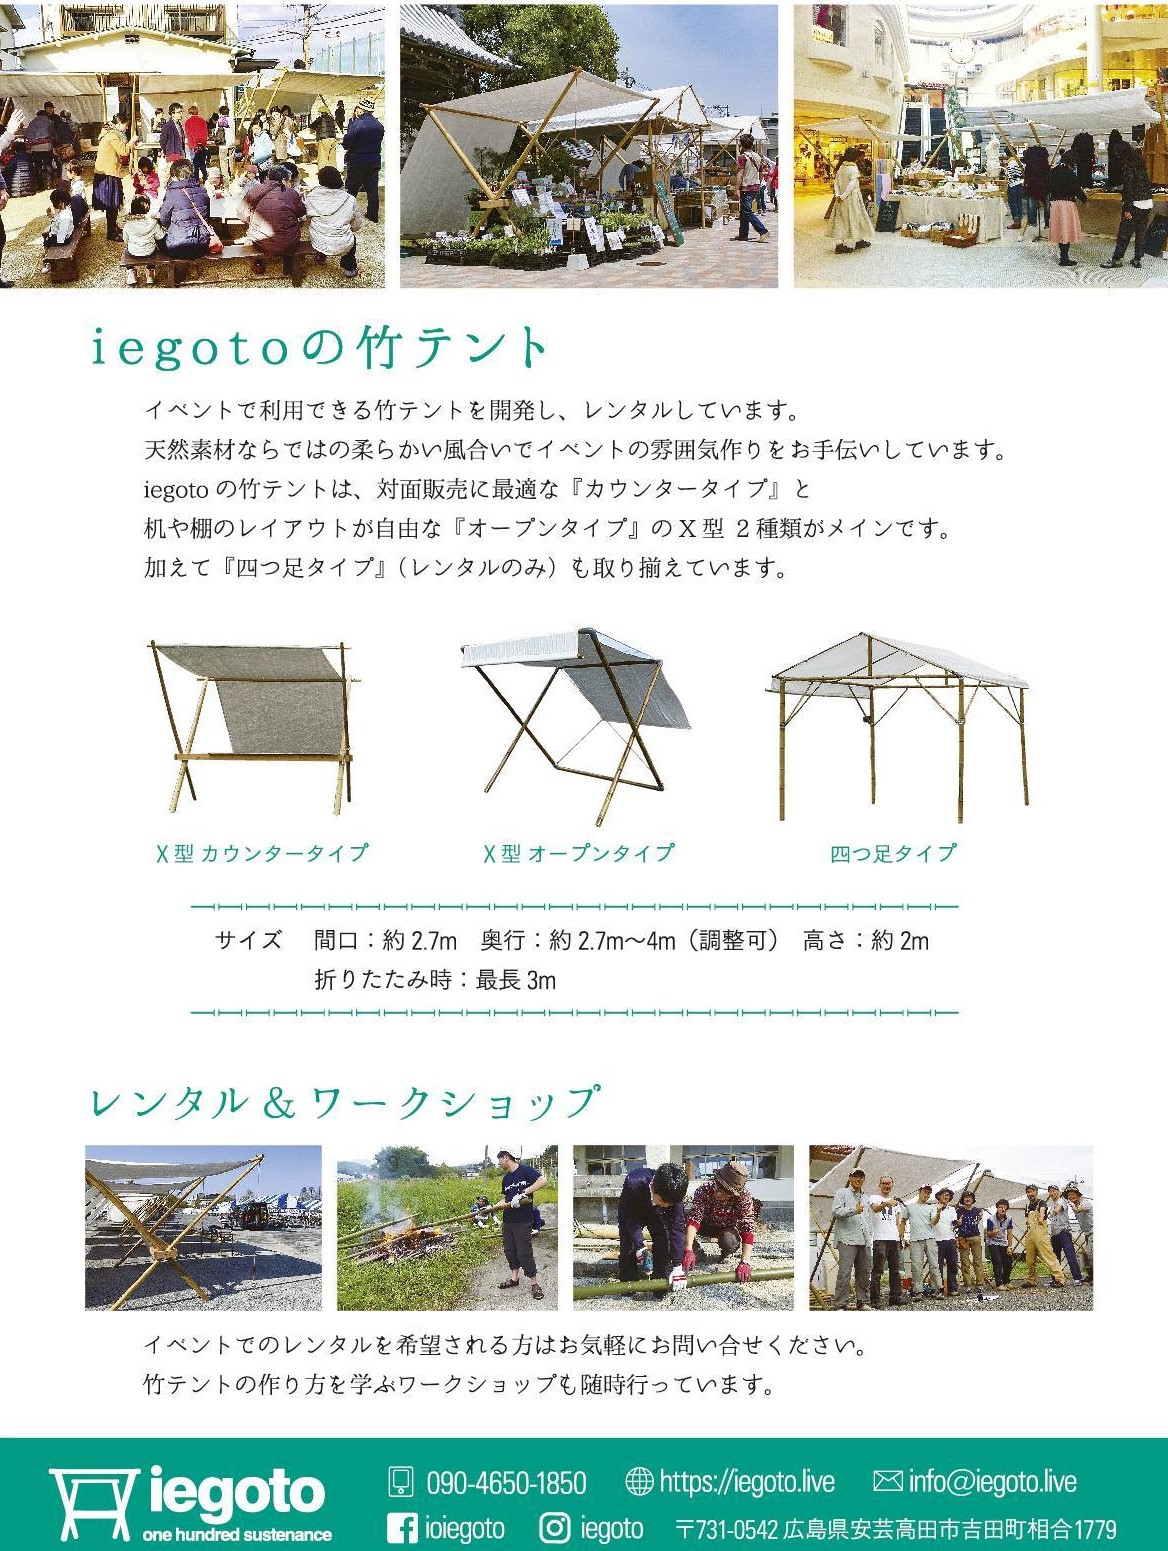 竹で作ろう 竹テントワークショップ イン神山 神山町のいまを伝える